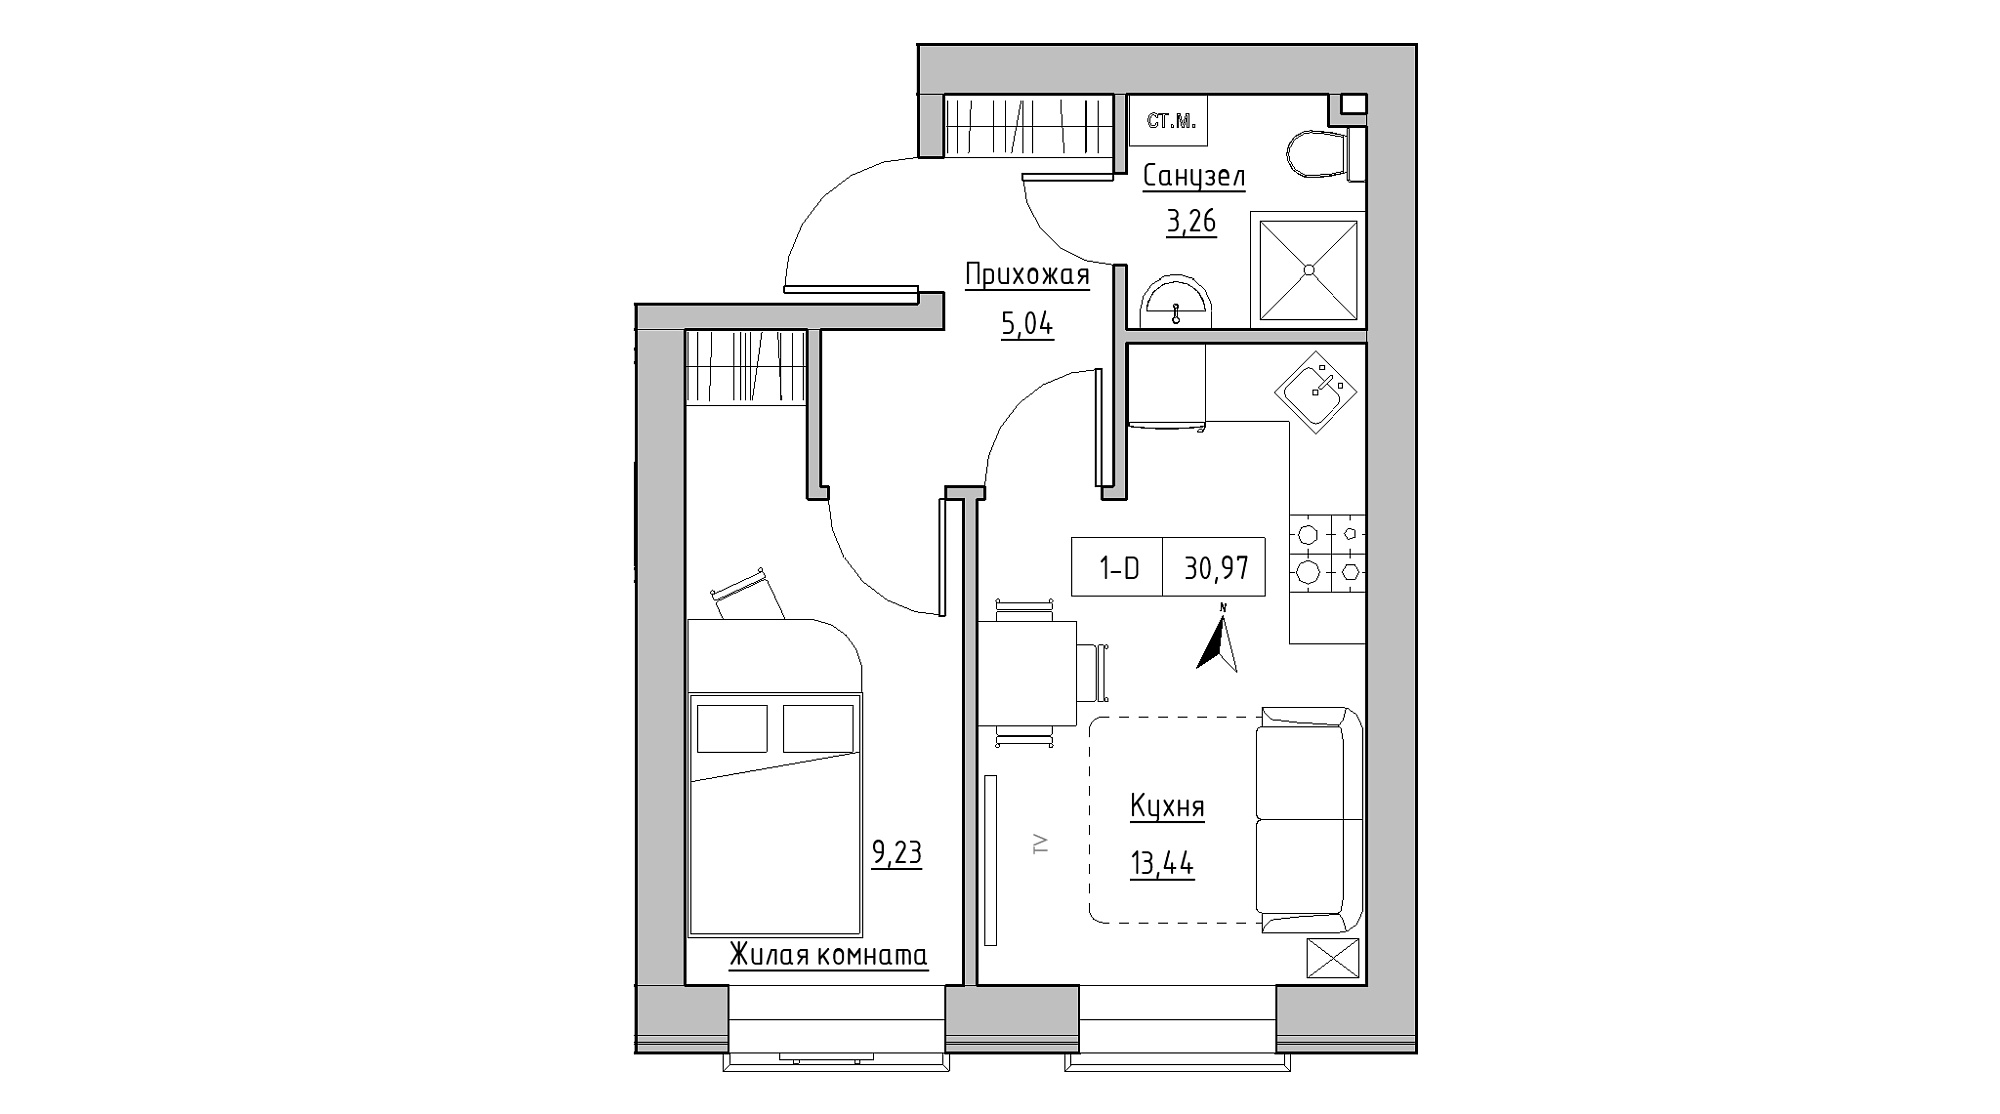 Планировка 1-к квартира площей 30.97м2, KS-013-01/0011.